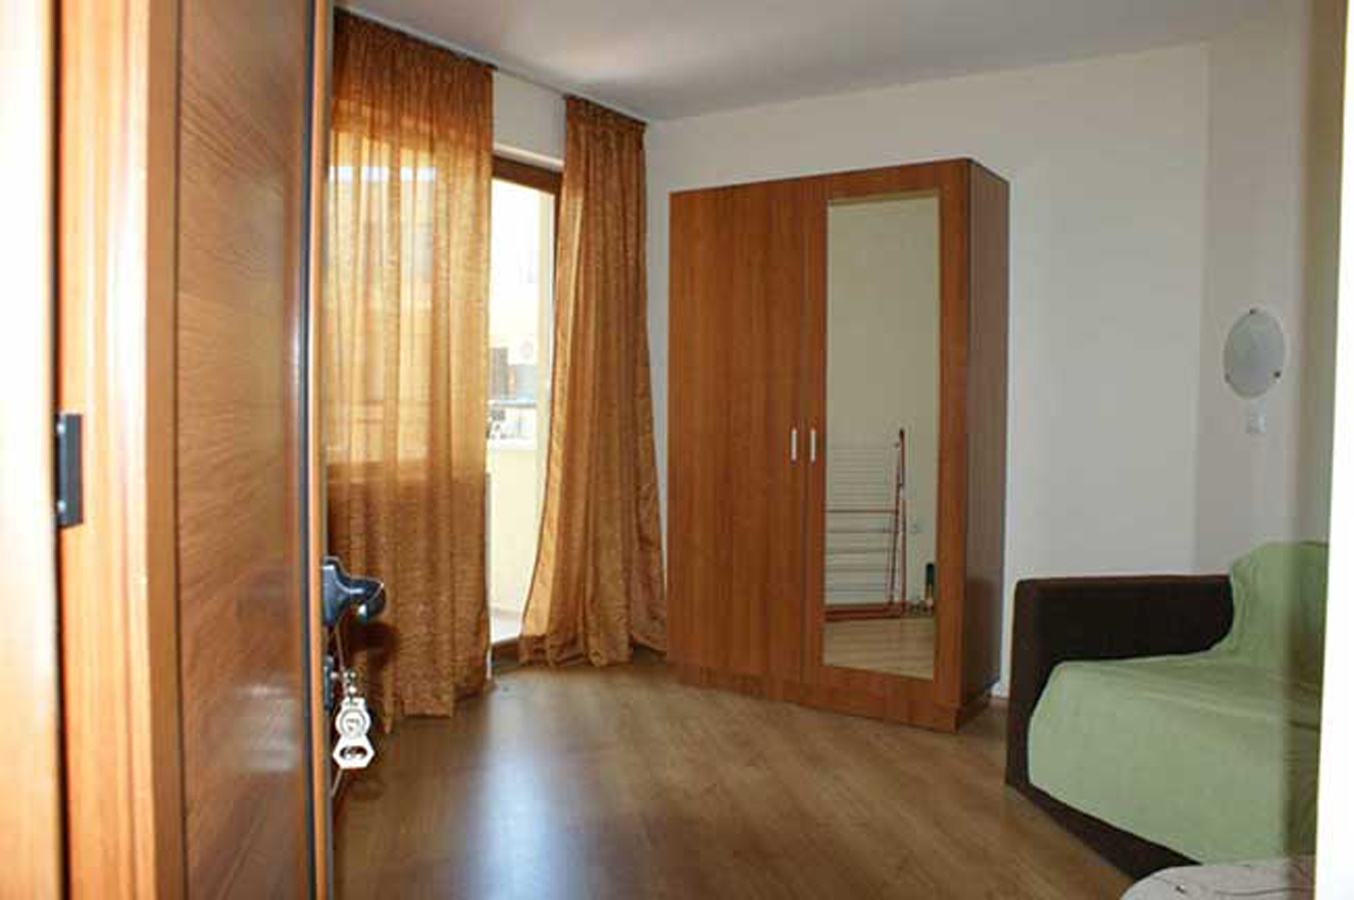 Продаётся квартира с 1 спальней,с мебелью и техникой, в Болгарии, на Солнечном берегу, в к-се Амадеус 5 -лучшая цена в городе Москва, фото 8, Жилая недвижимость в дальнем зарубежье